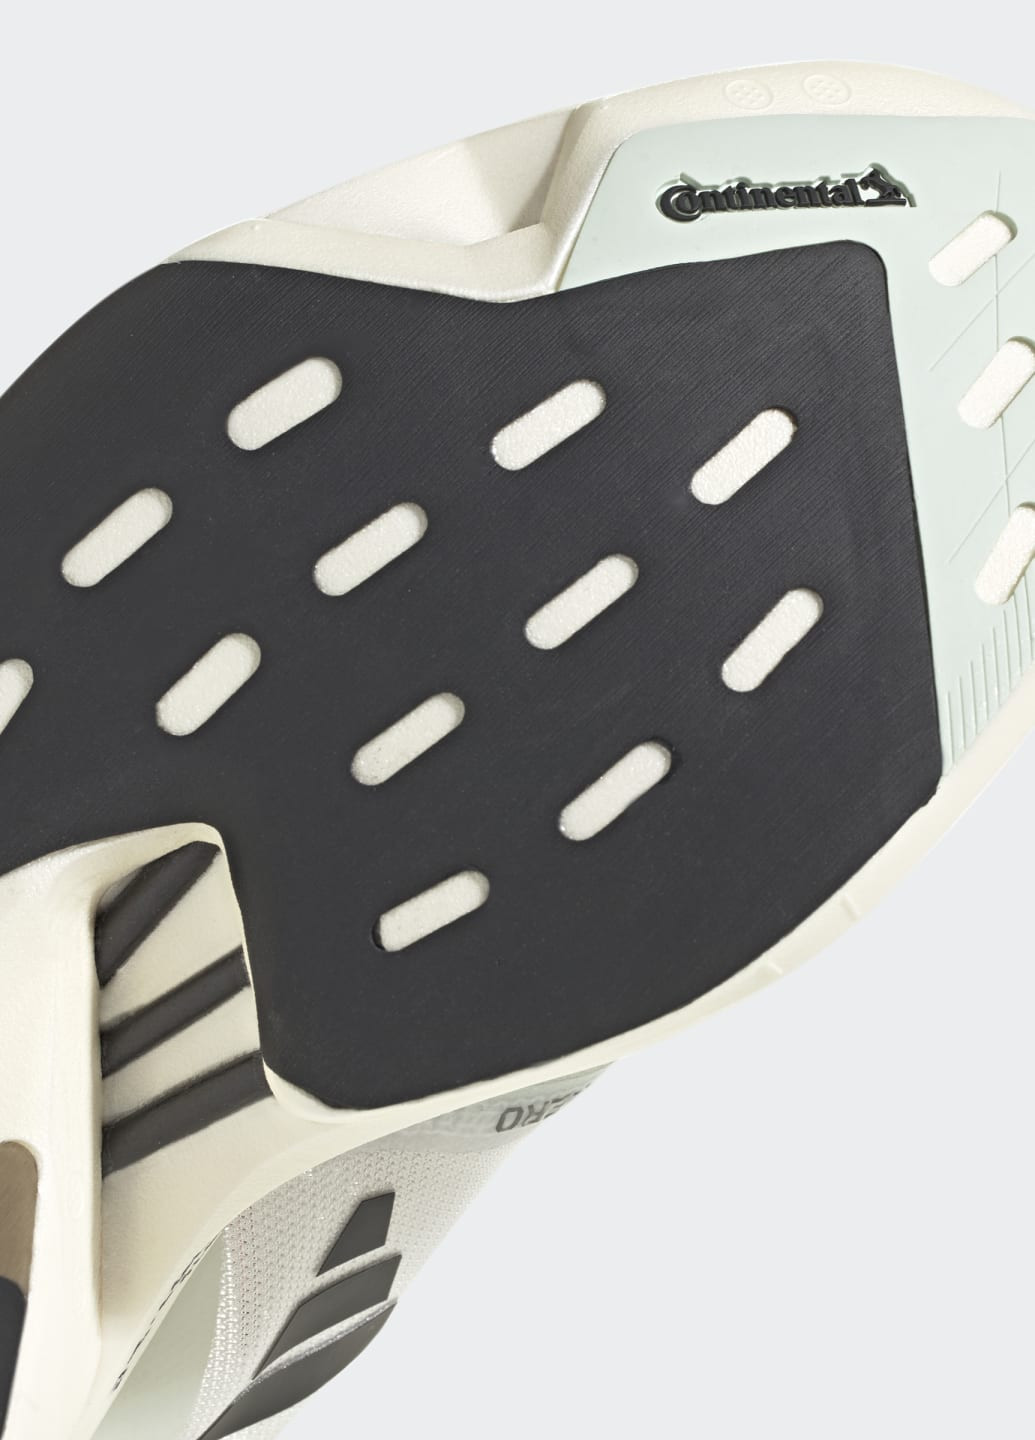 Білі всесезонні кросівки для бігу adizero adios pro 3 adidas